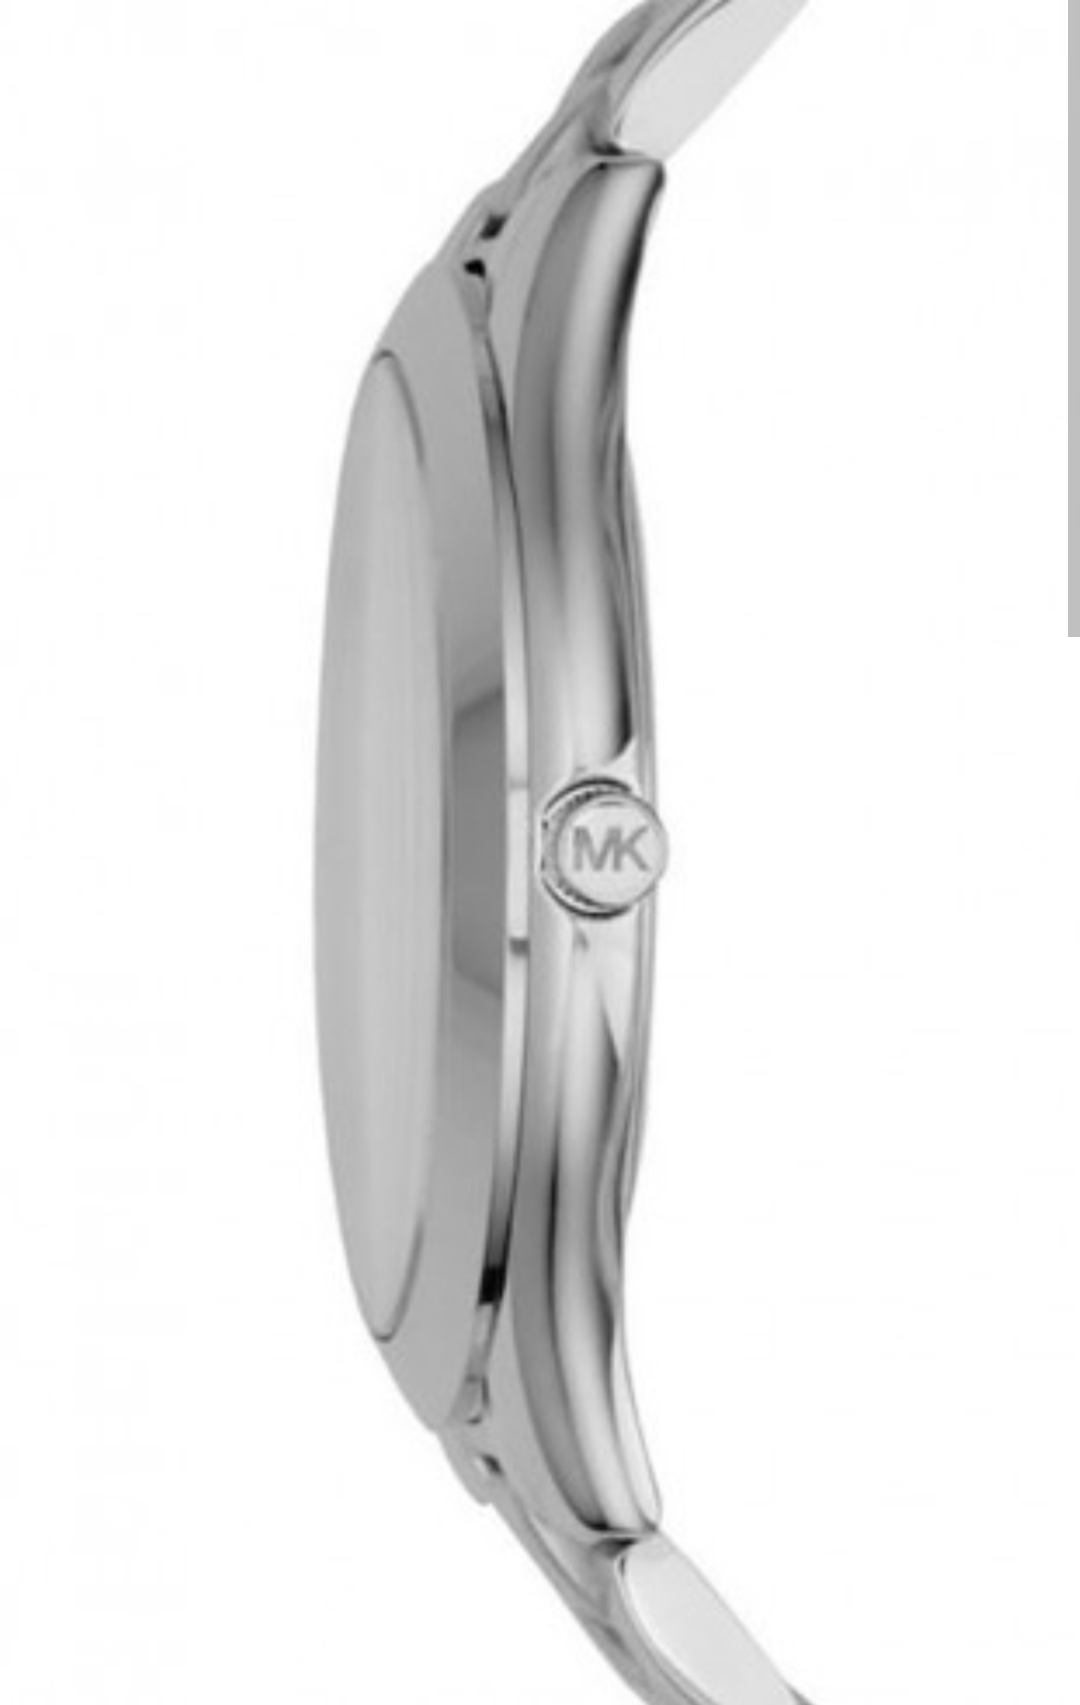 Michael Kors MK3178 Ladies Slim Runway Silver Bracelet Quartz Watch - Image 6 of 7